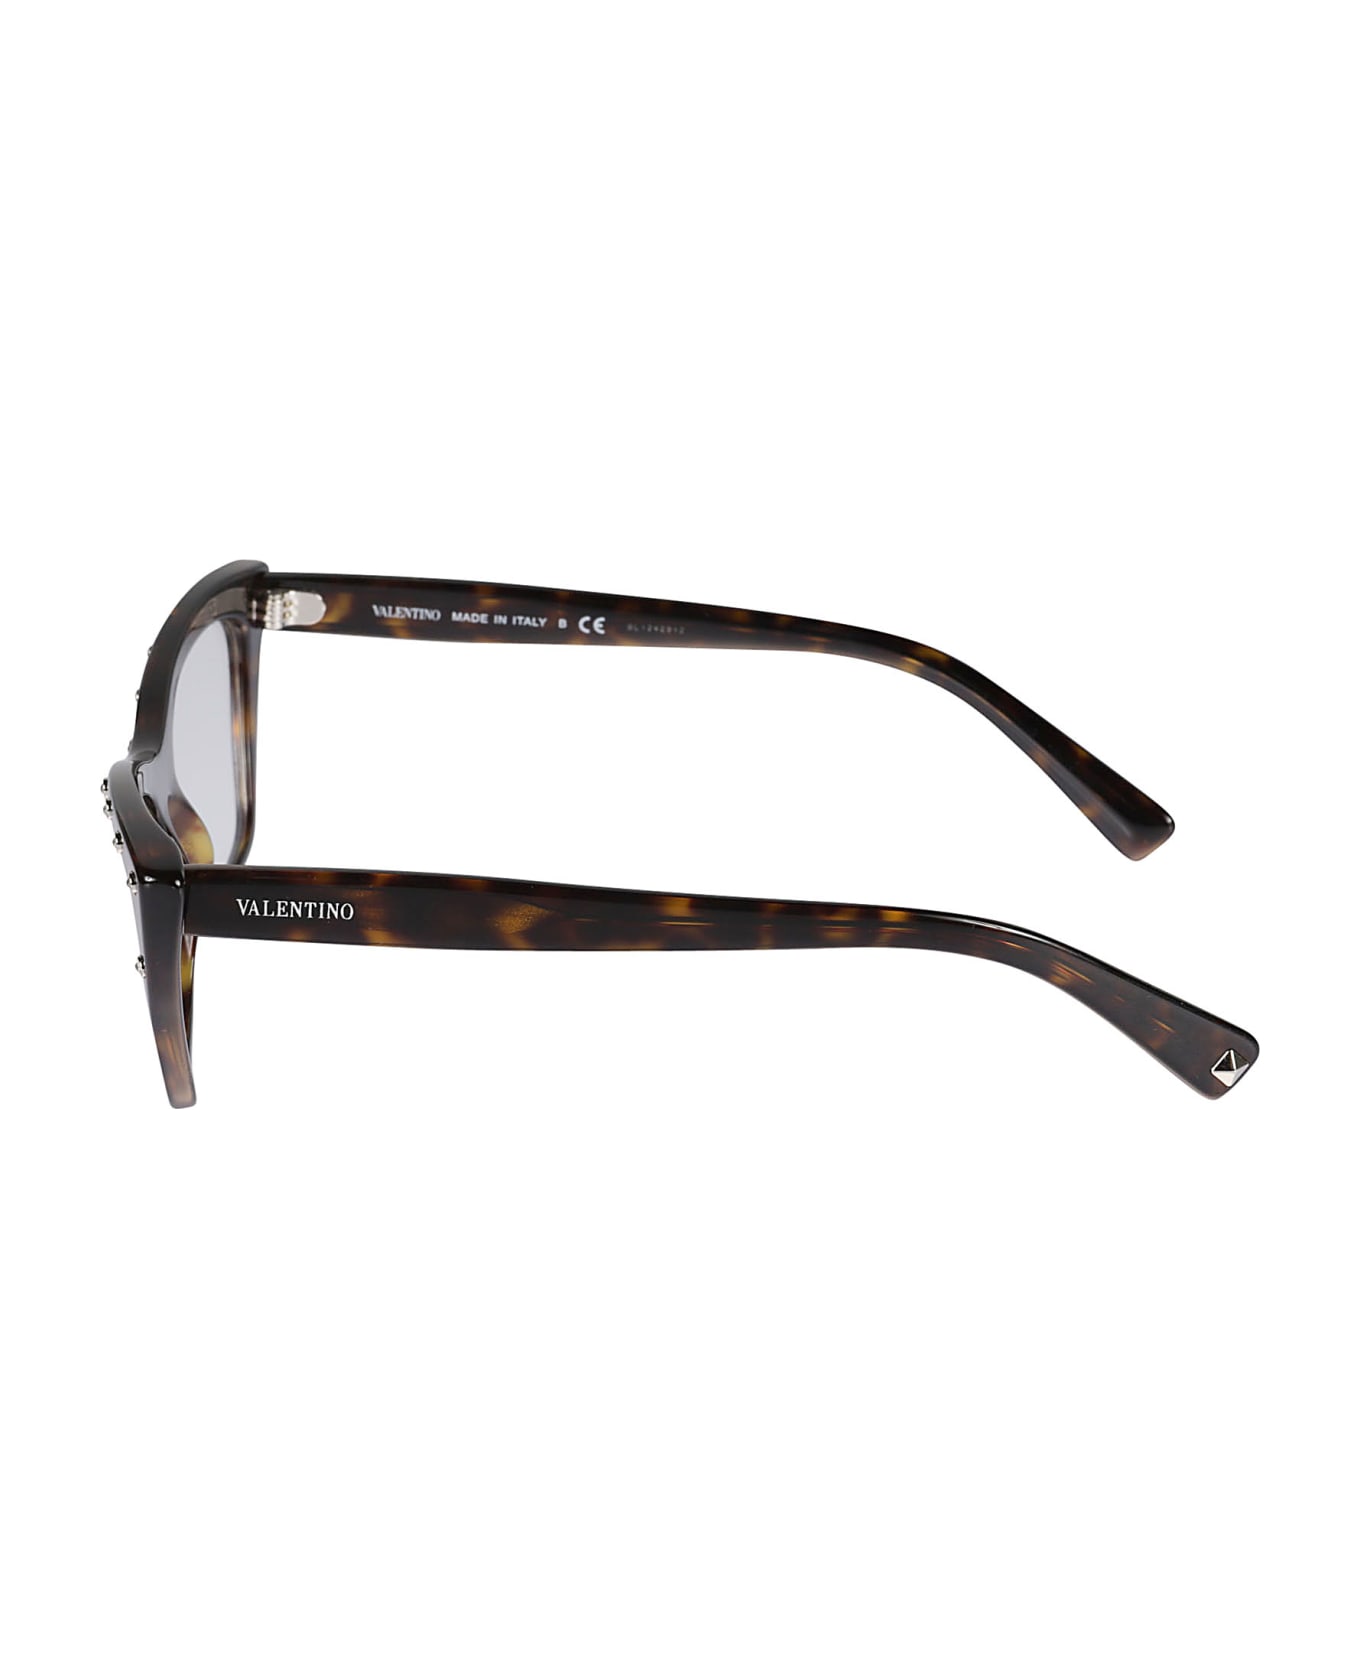 Valentino Eyewear Vista5002 Glasses - 5002 アイウェア